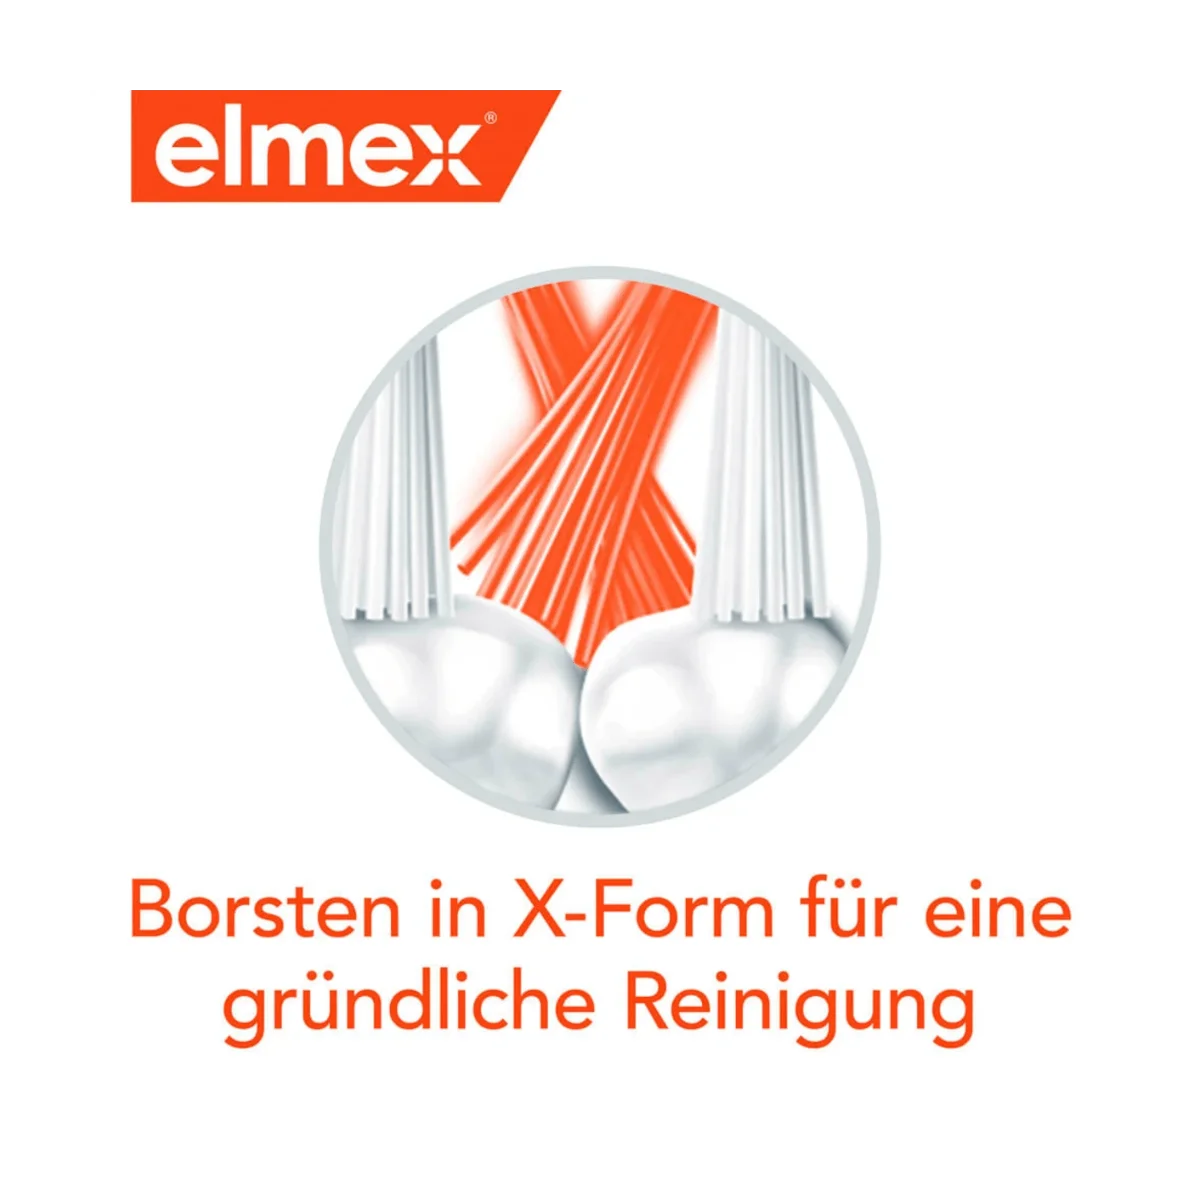 elmex Zahnbürste InterX Kariesschutz mittel, 1 Stk